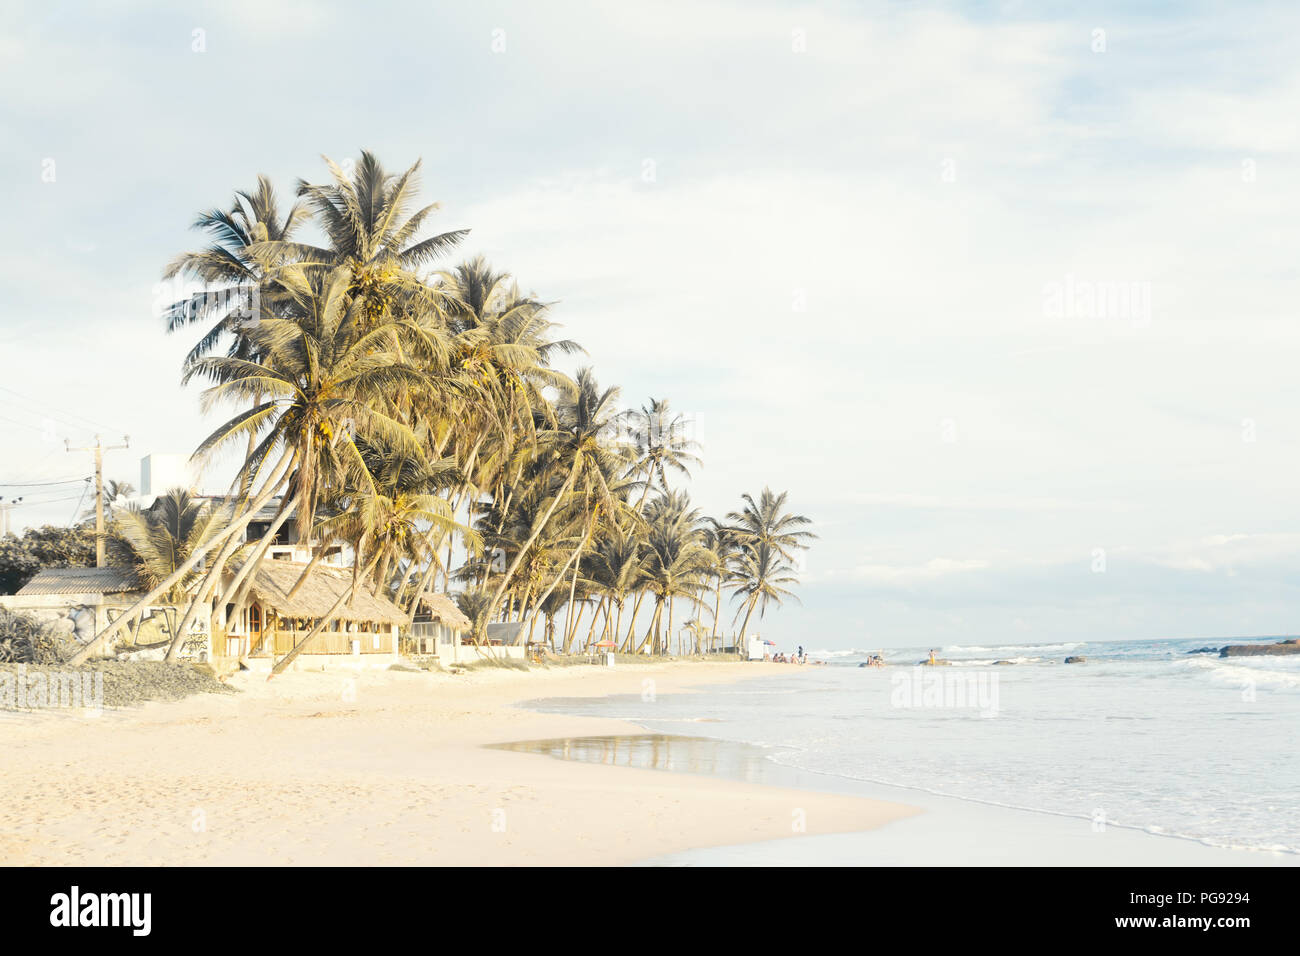 Tropical perfecto de playa con arena blanca Foto de stock